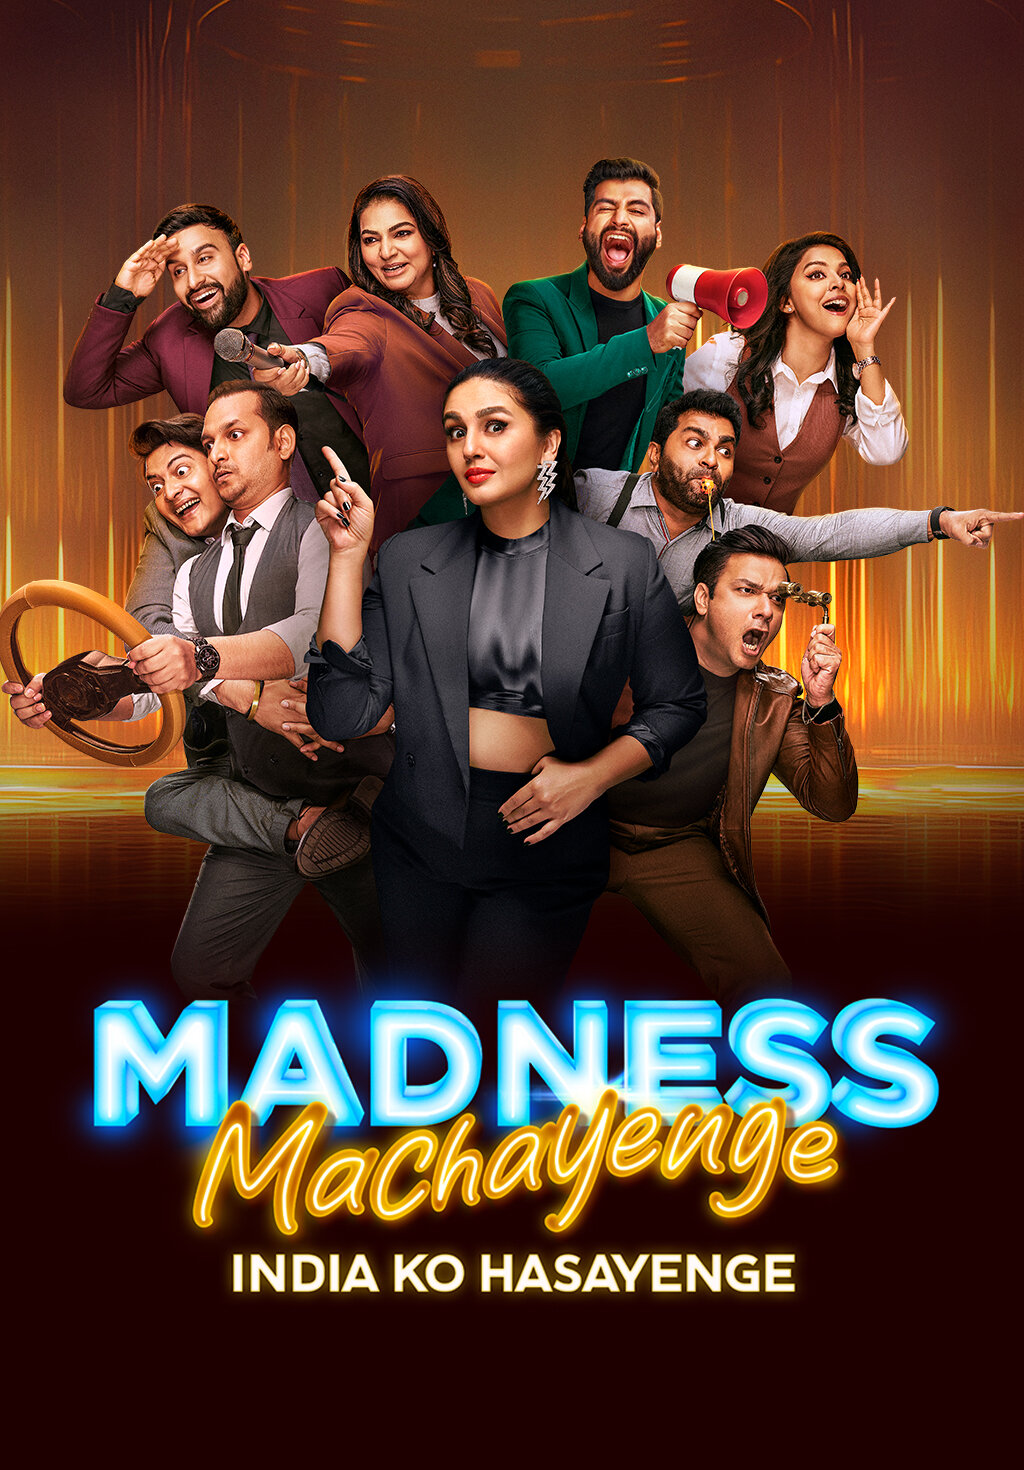 Madness Machayenge - India Ko Hasayenge ne zaman